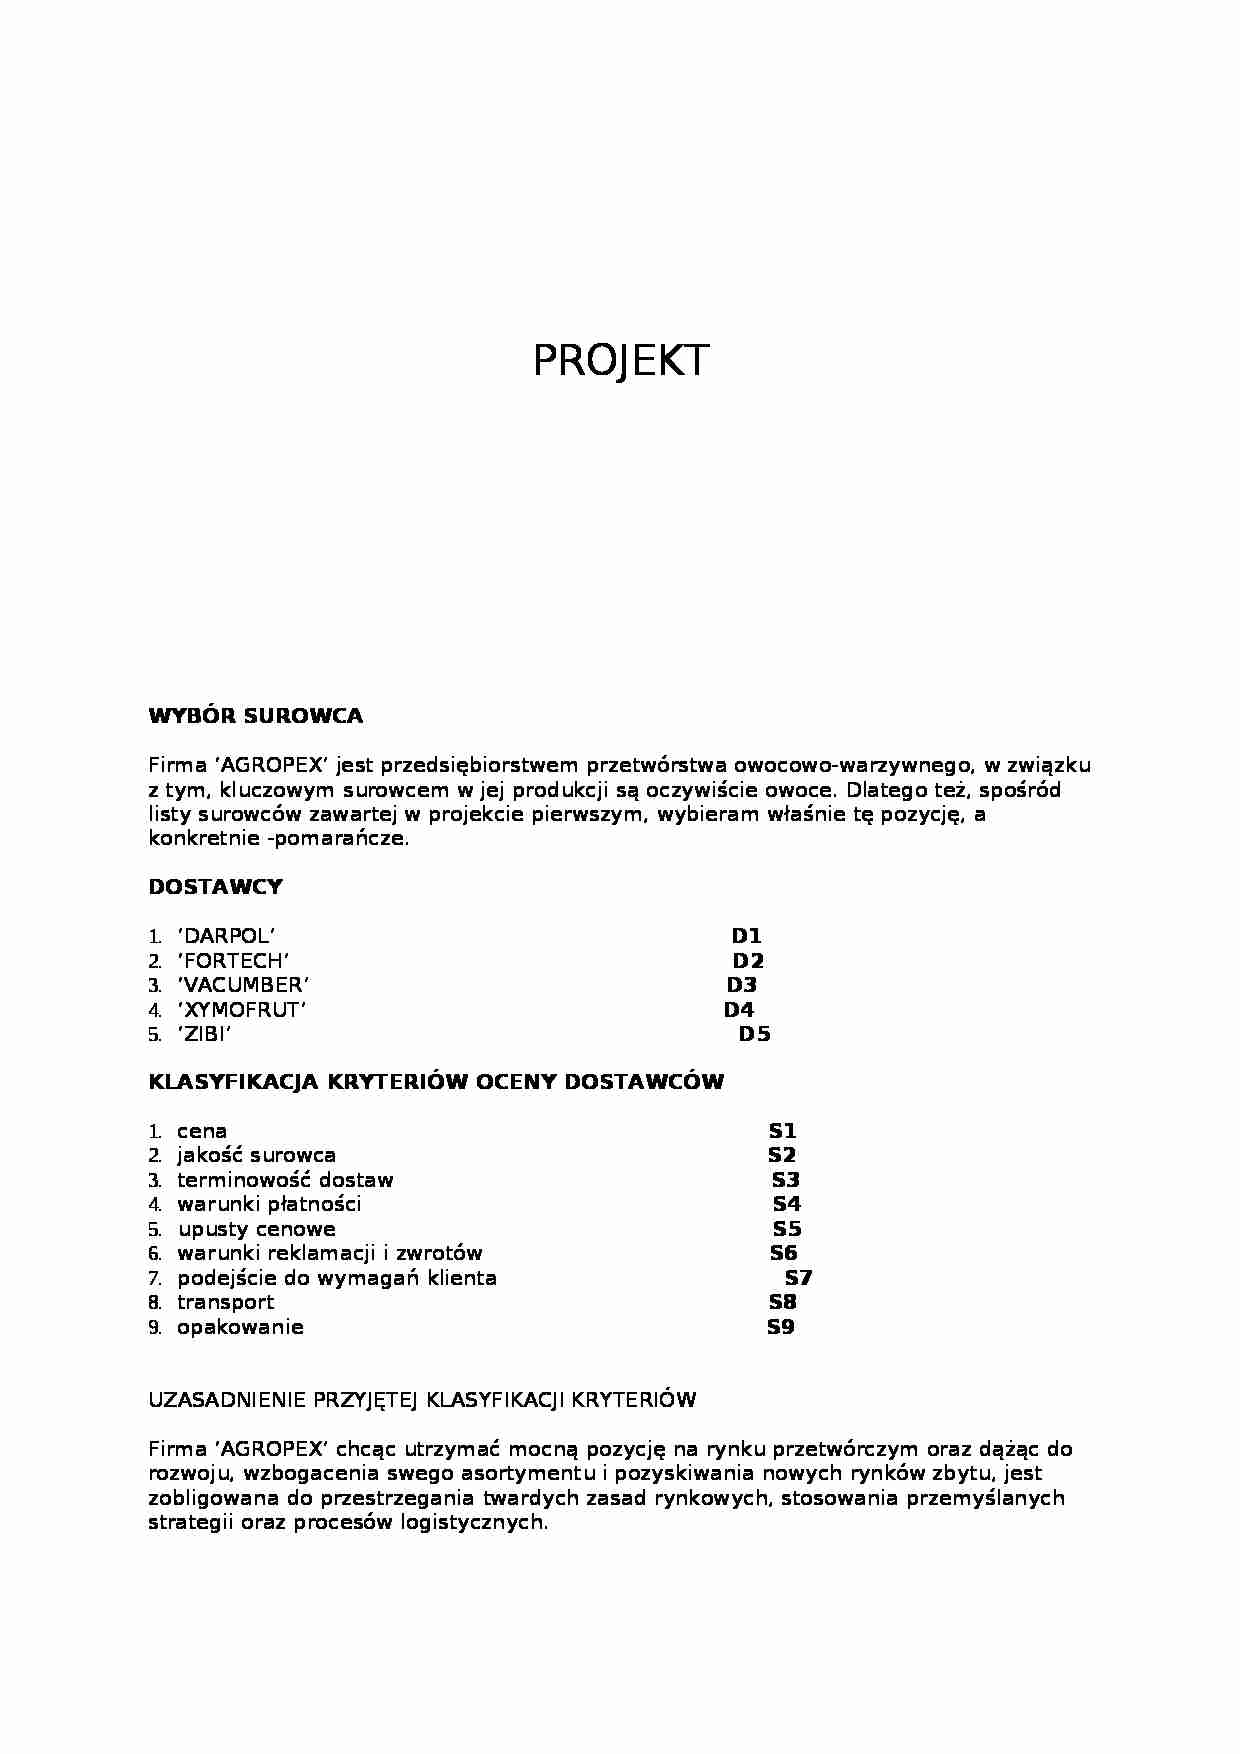 Logistyka - projekty - strona 1